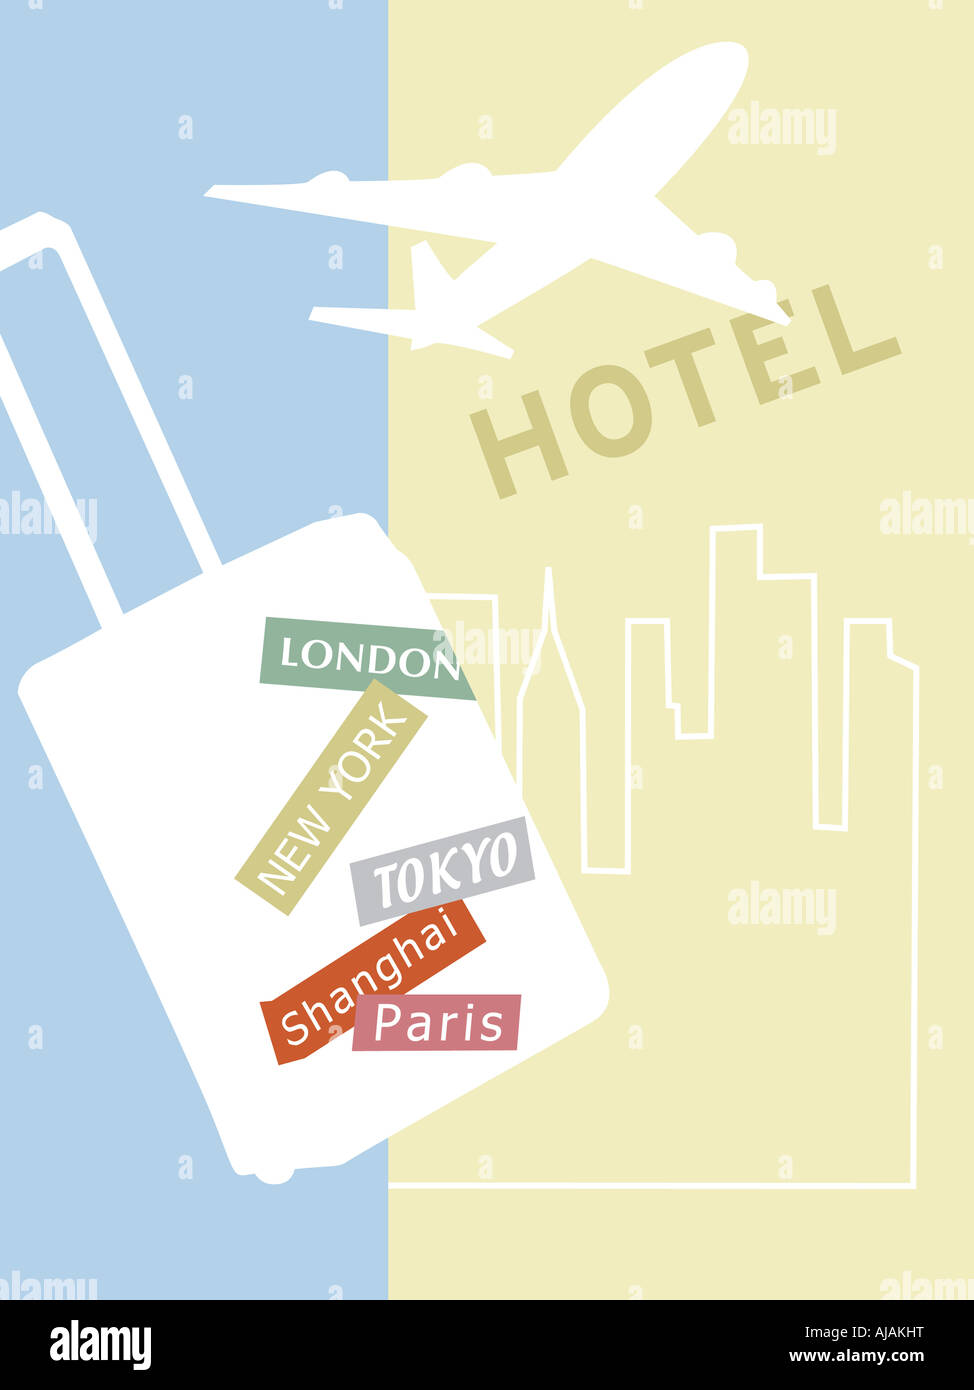 International Travel Illustration - Hotel, Plane, Major City, Luggage Stock Photo